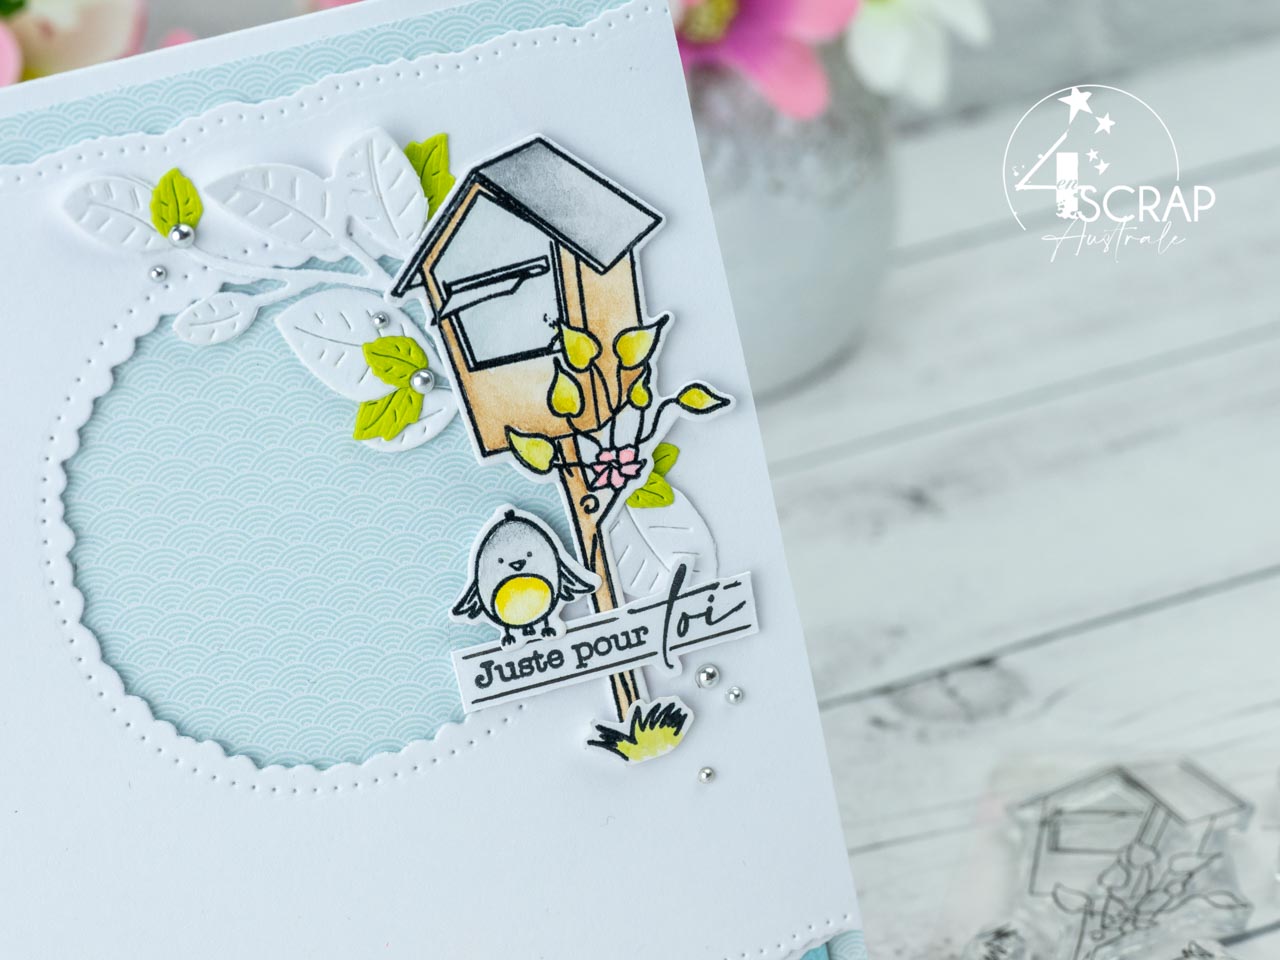 Création d'une série de cartes de printemps avec boites aux lettres, feuillages et petits oiseaux de 4enscrap.